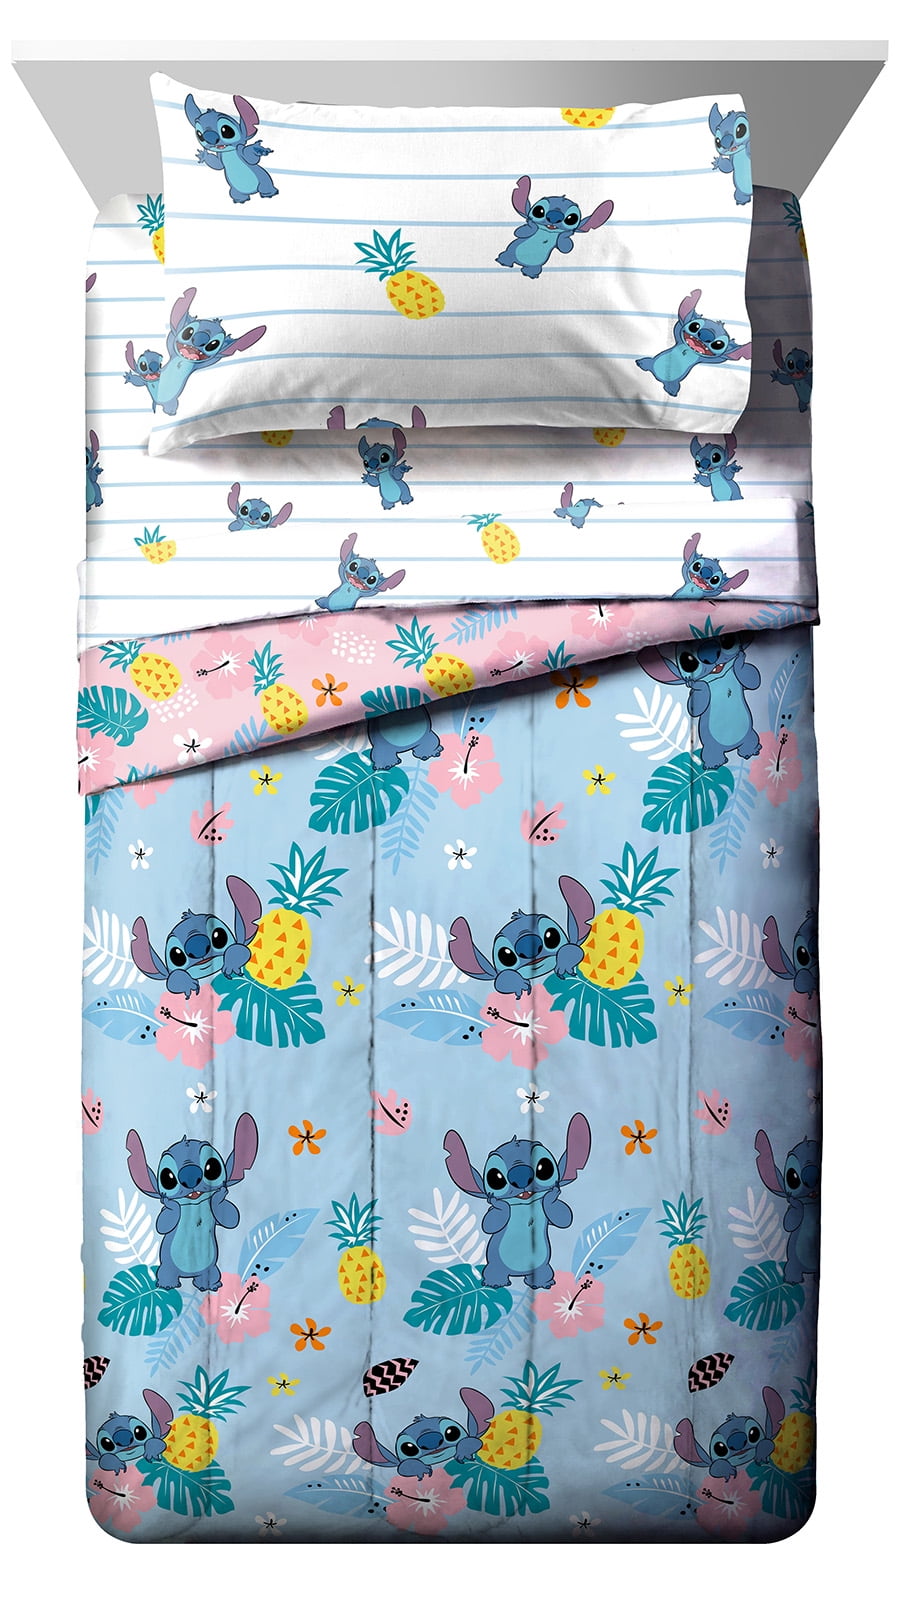 Stitch Lilo Kids Bedding Set 7 Piece Queen Girls Crib Nursery Bed in a Bag 